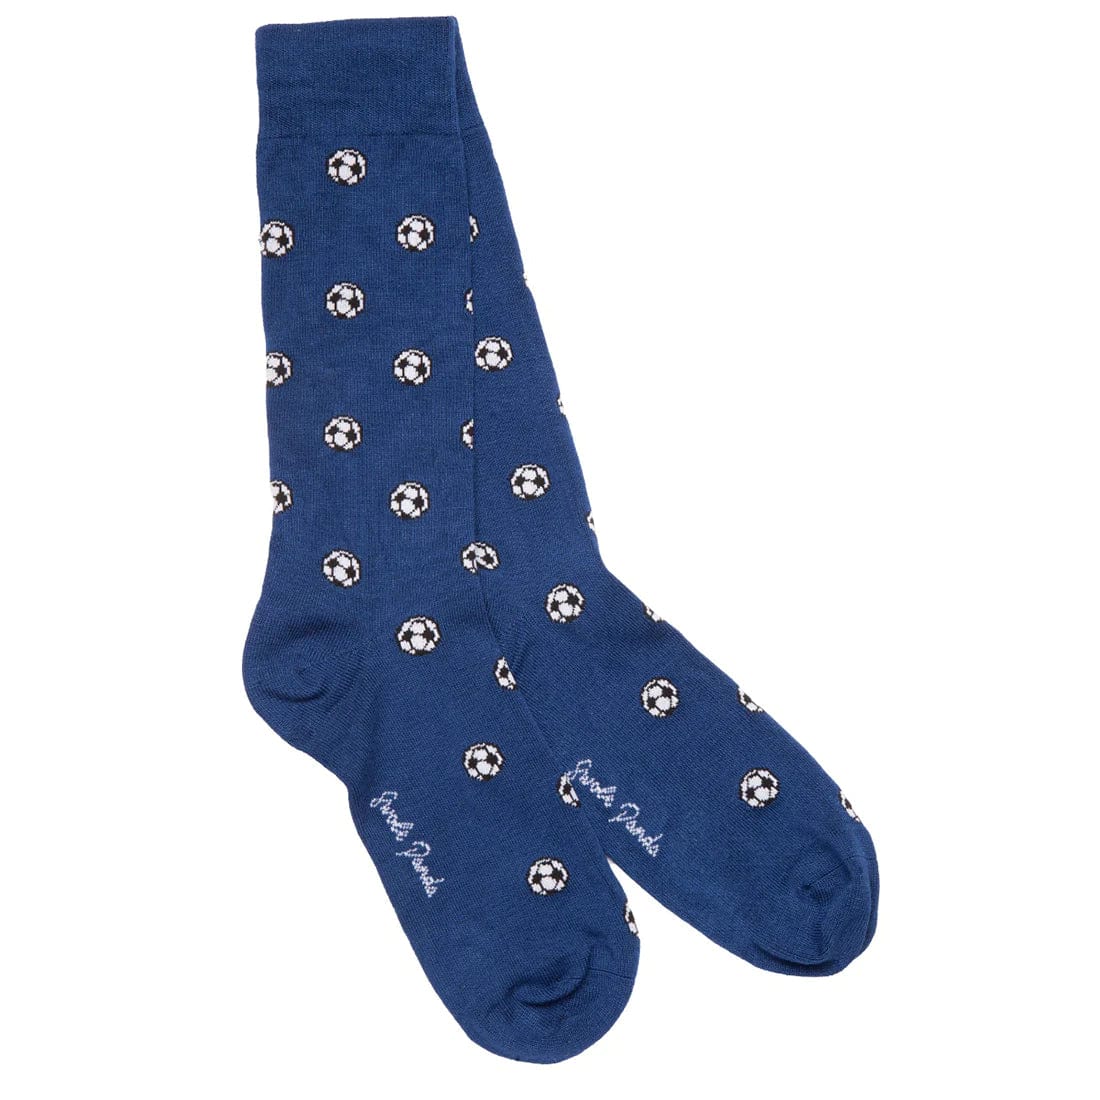 Swole Panda Football Socks in Blue